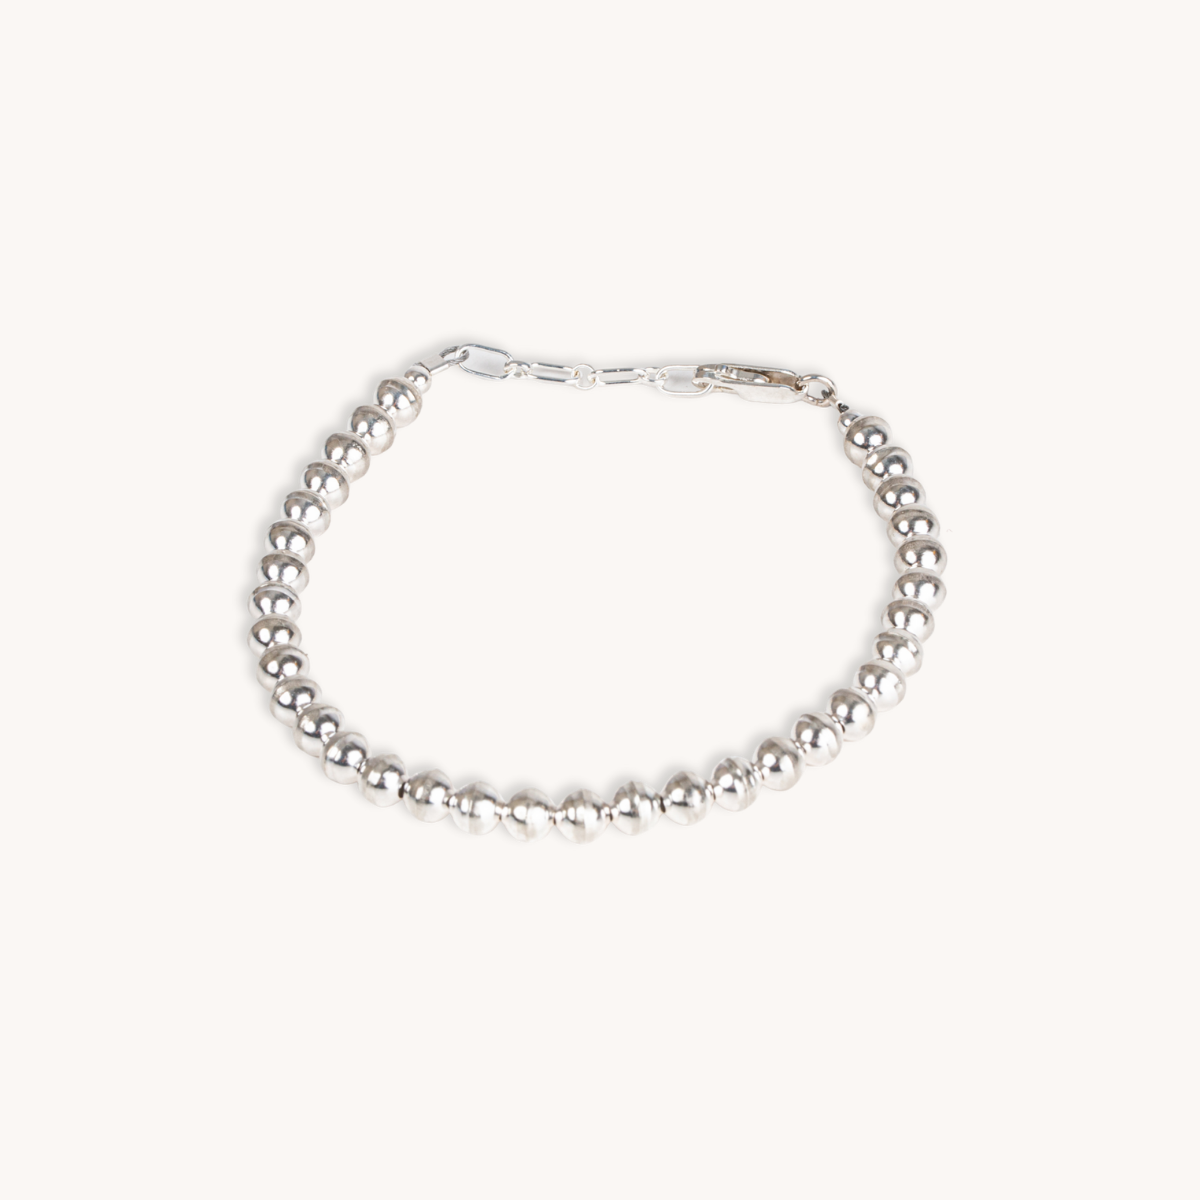 Desert Pearls Silver Beads Bracelet